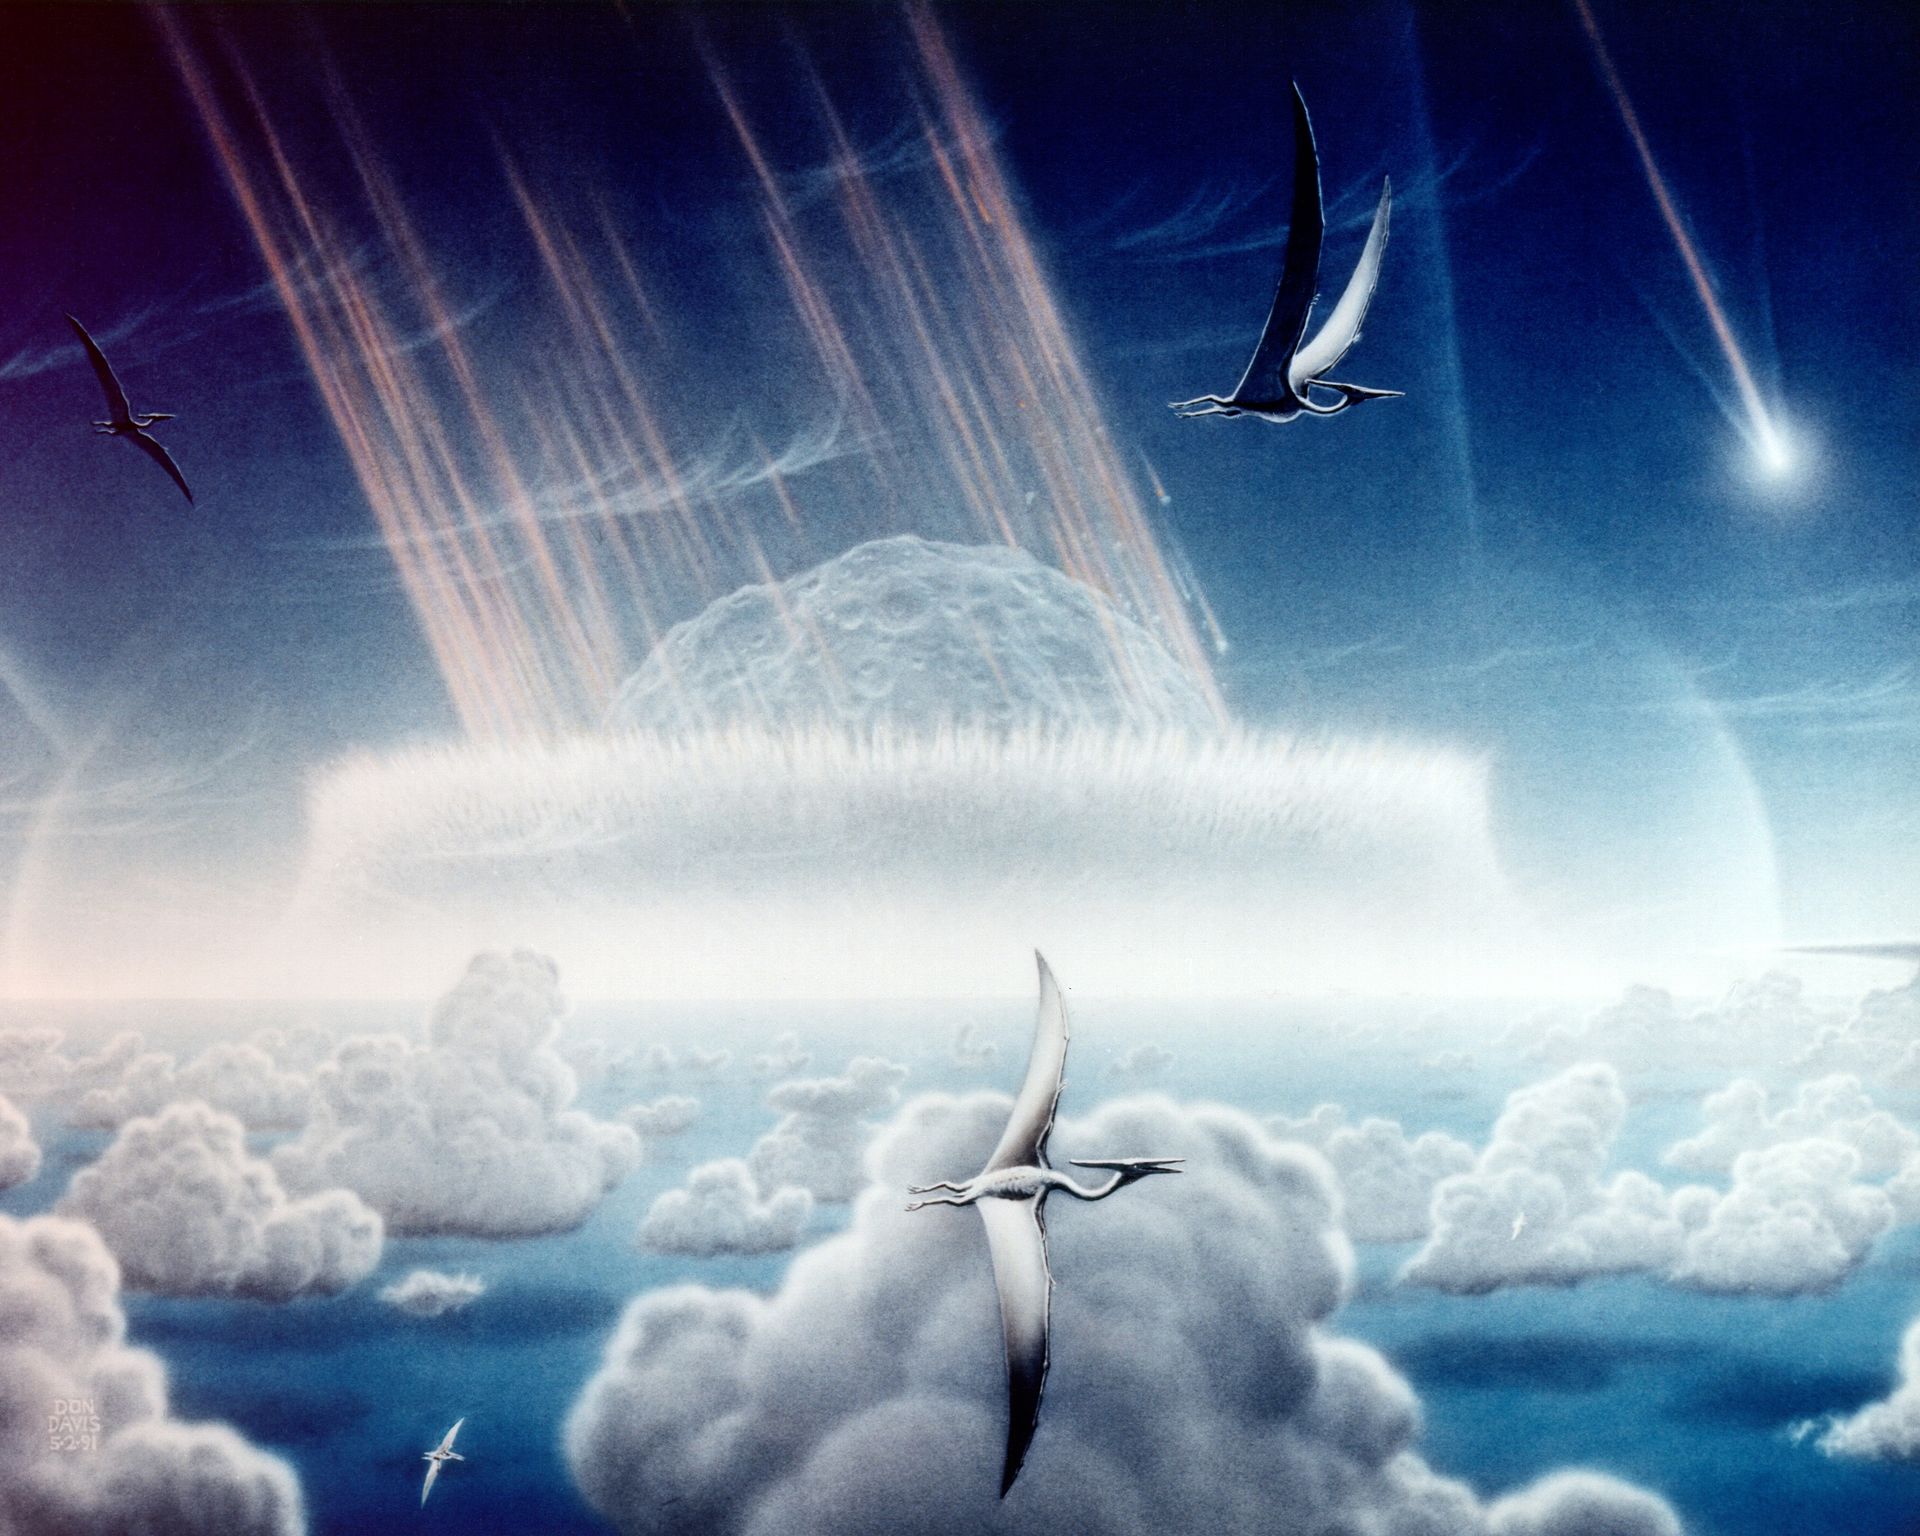 Dnes již slavné zpodobnění srážky planetky se Zemí na konci křídy, vytvořené výtvarníkem Donaldem E. Davisem v roce 1994. Působivou atmosféru této ilustrace kazí pouze ptakoještěři v popředí, patřící k vývojové linii příbuzné pteranodonům. Nedávné ob